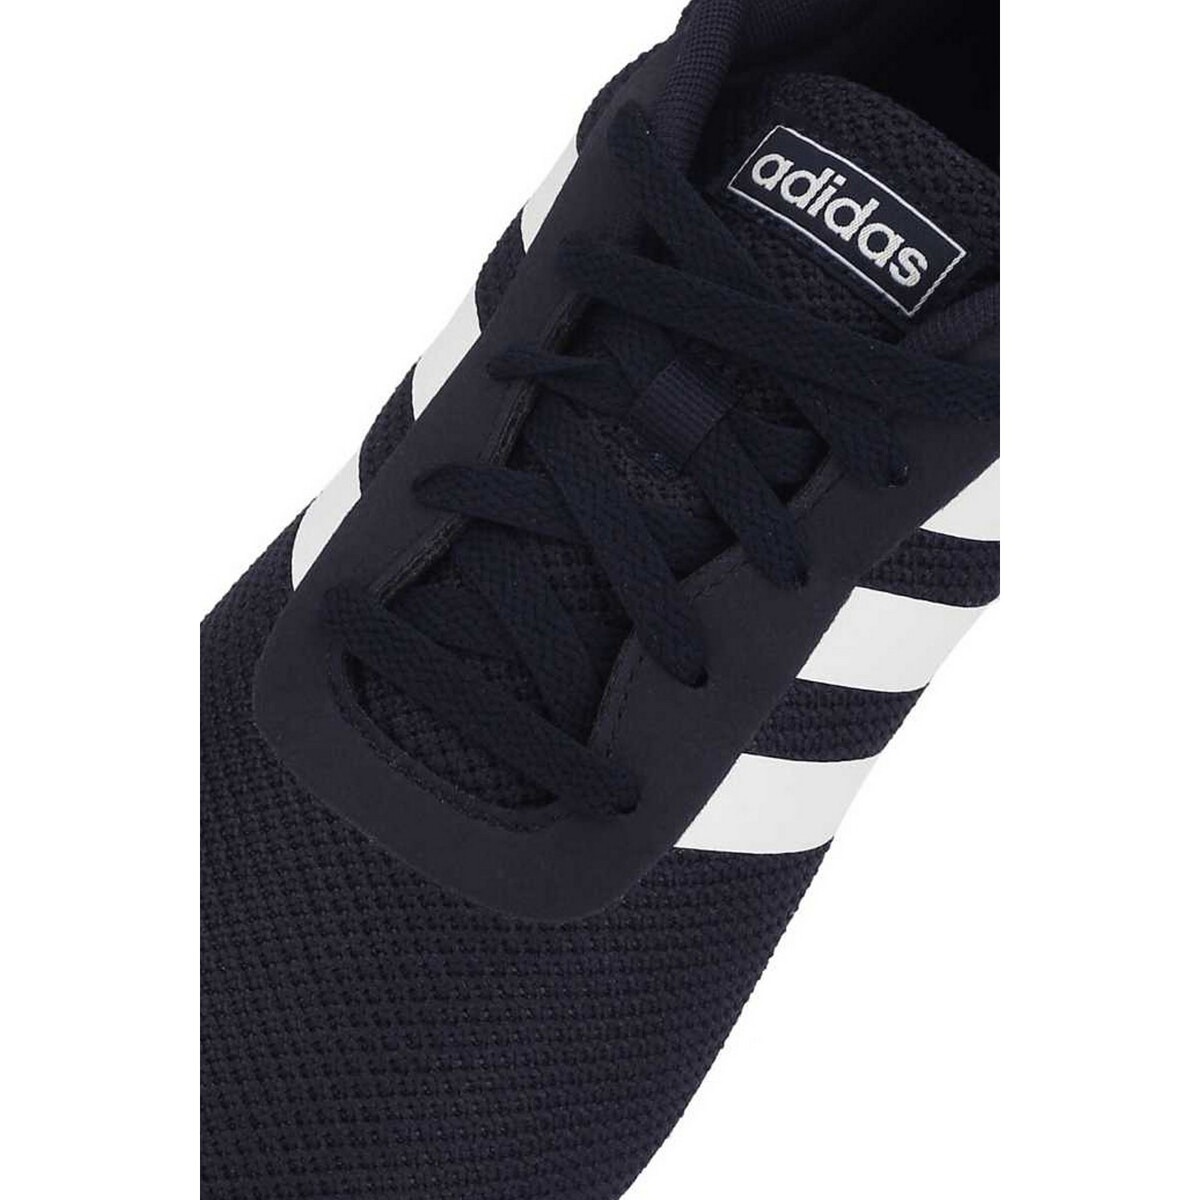 Adidas Mens Sports Shoes EG3281, 9